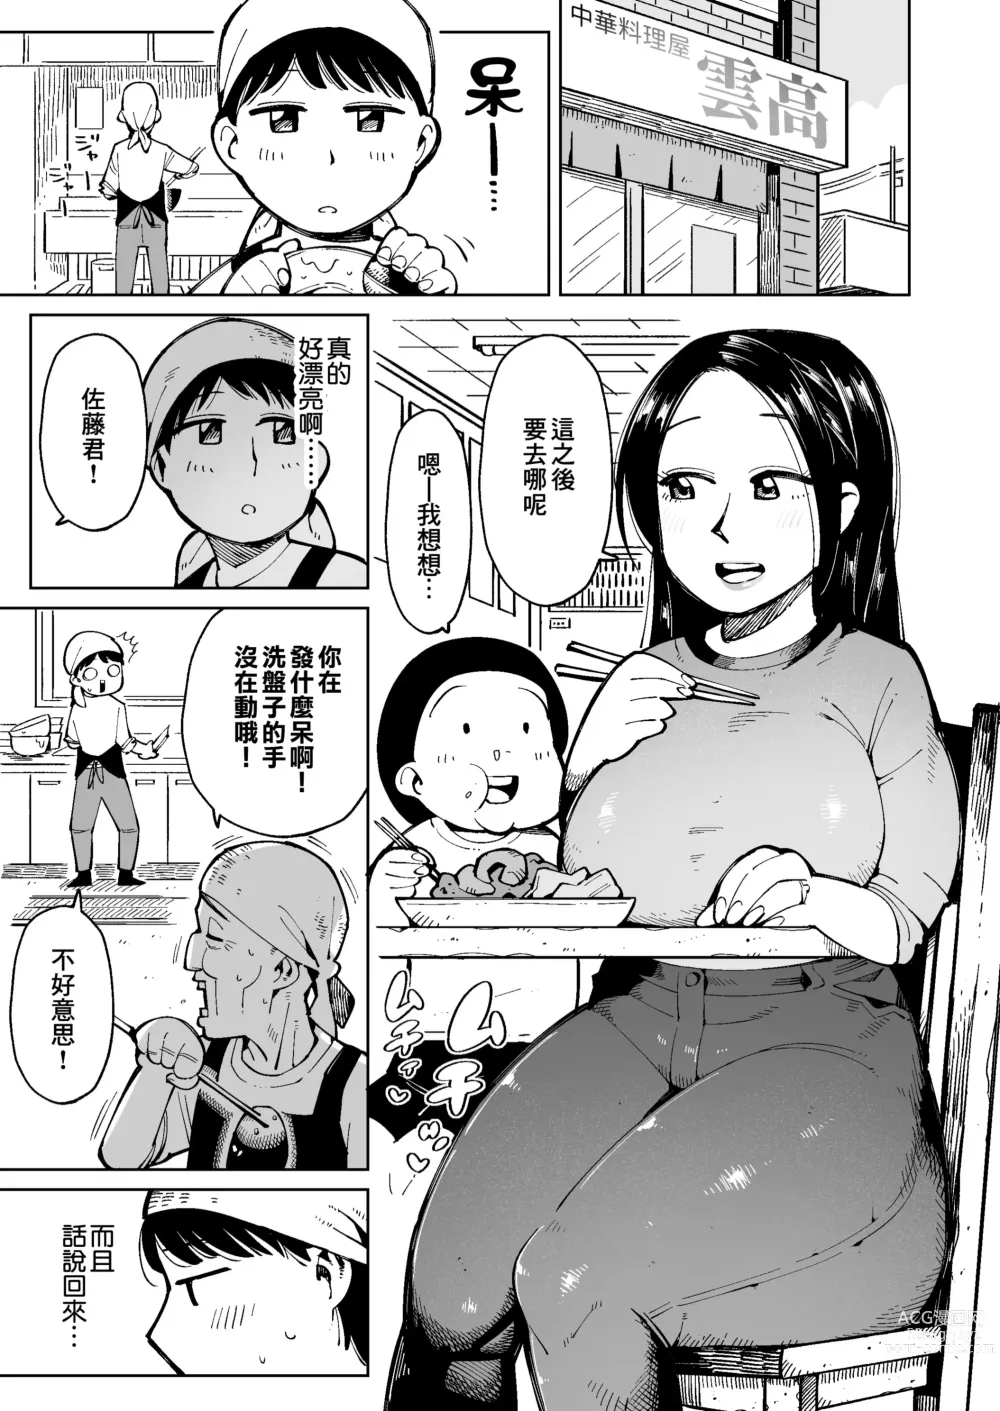 Page 2 of doujinshi 在電車上對大屁股太太進行癡漢行為時弄到大便失禁了所以就這麼操下去了。